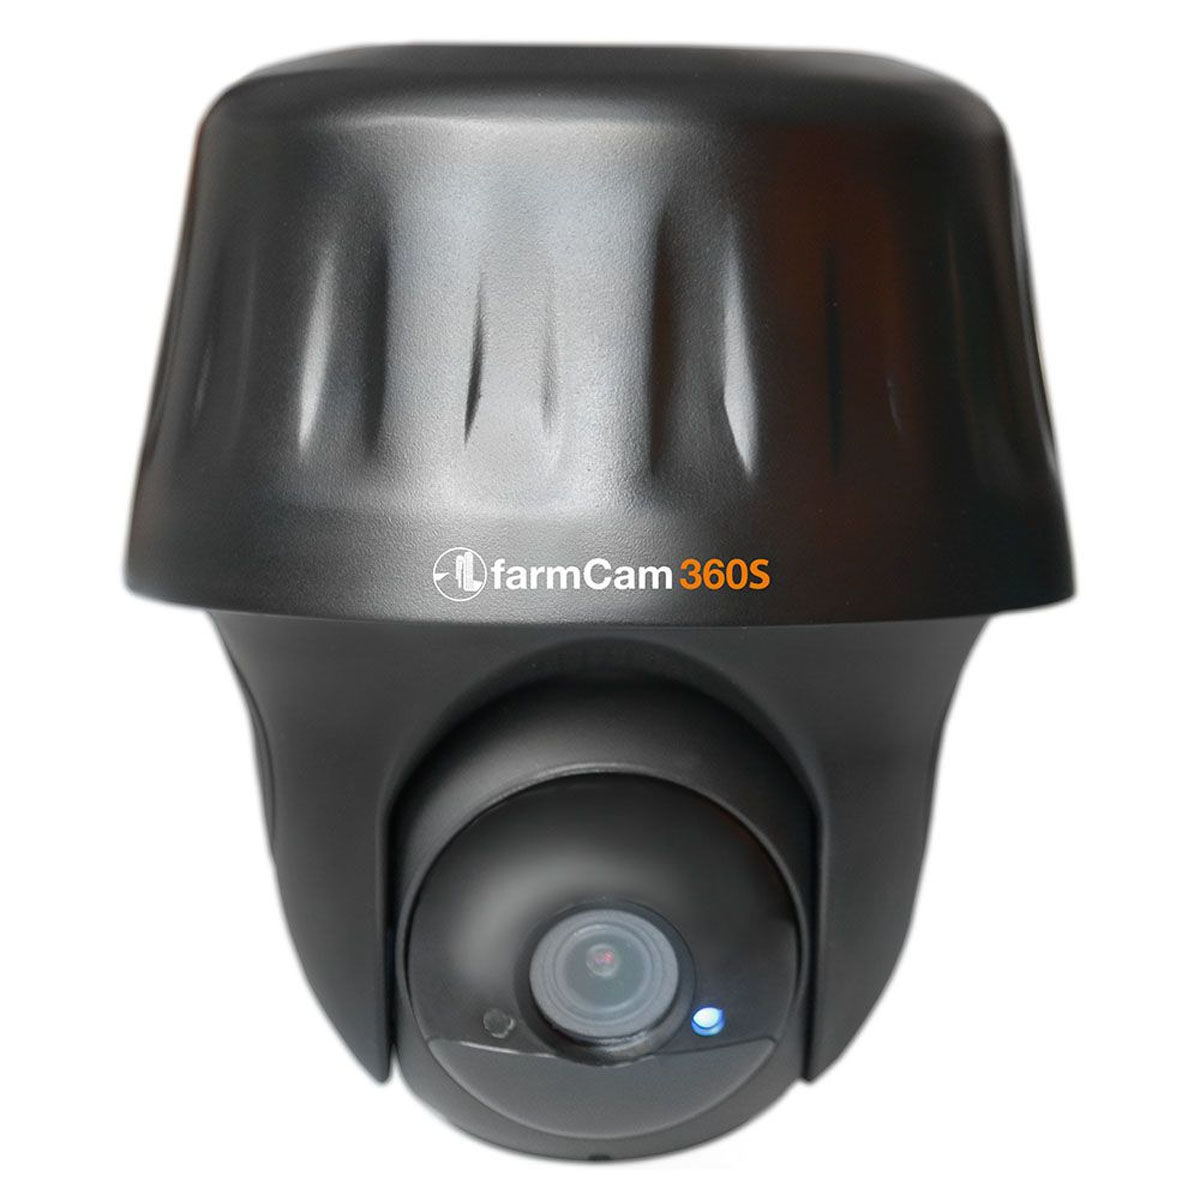 Caméra de surveillance VISION 360° professionnelle HORIZONT - Ukal